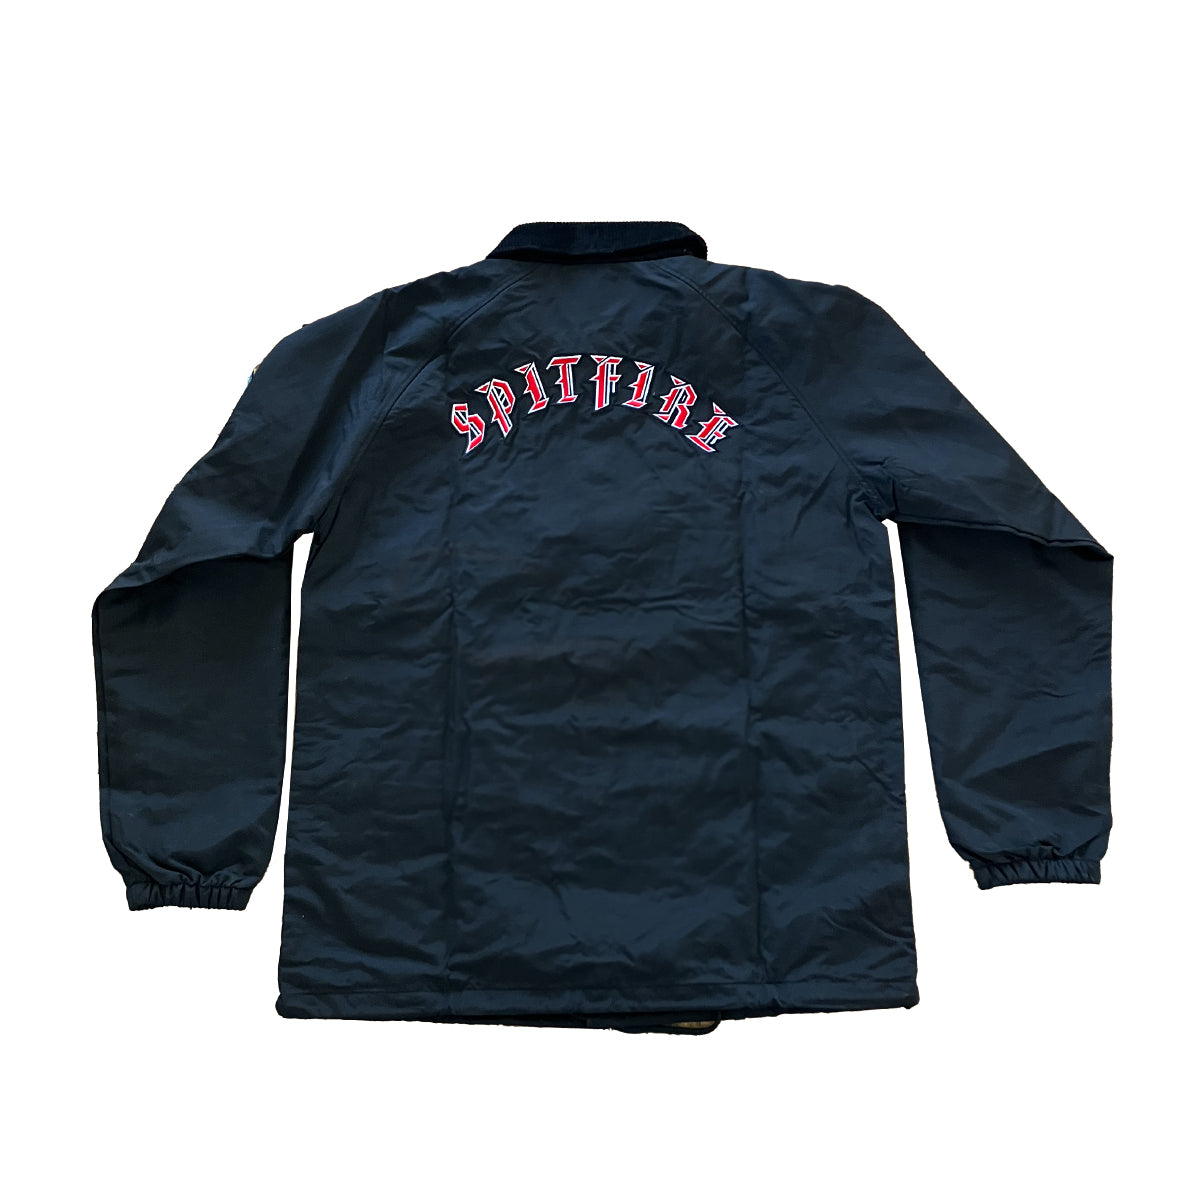 Spitfire Old English Jacket Embroidered Black